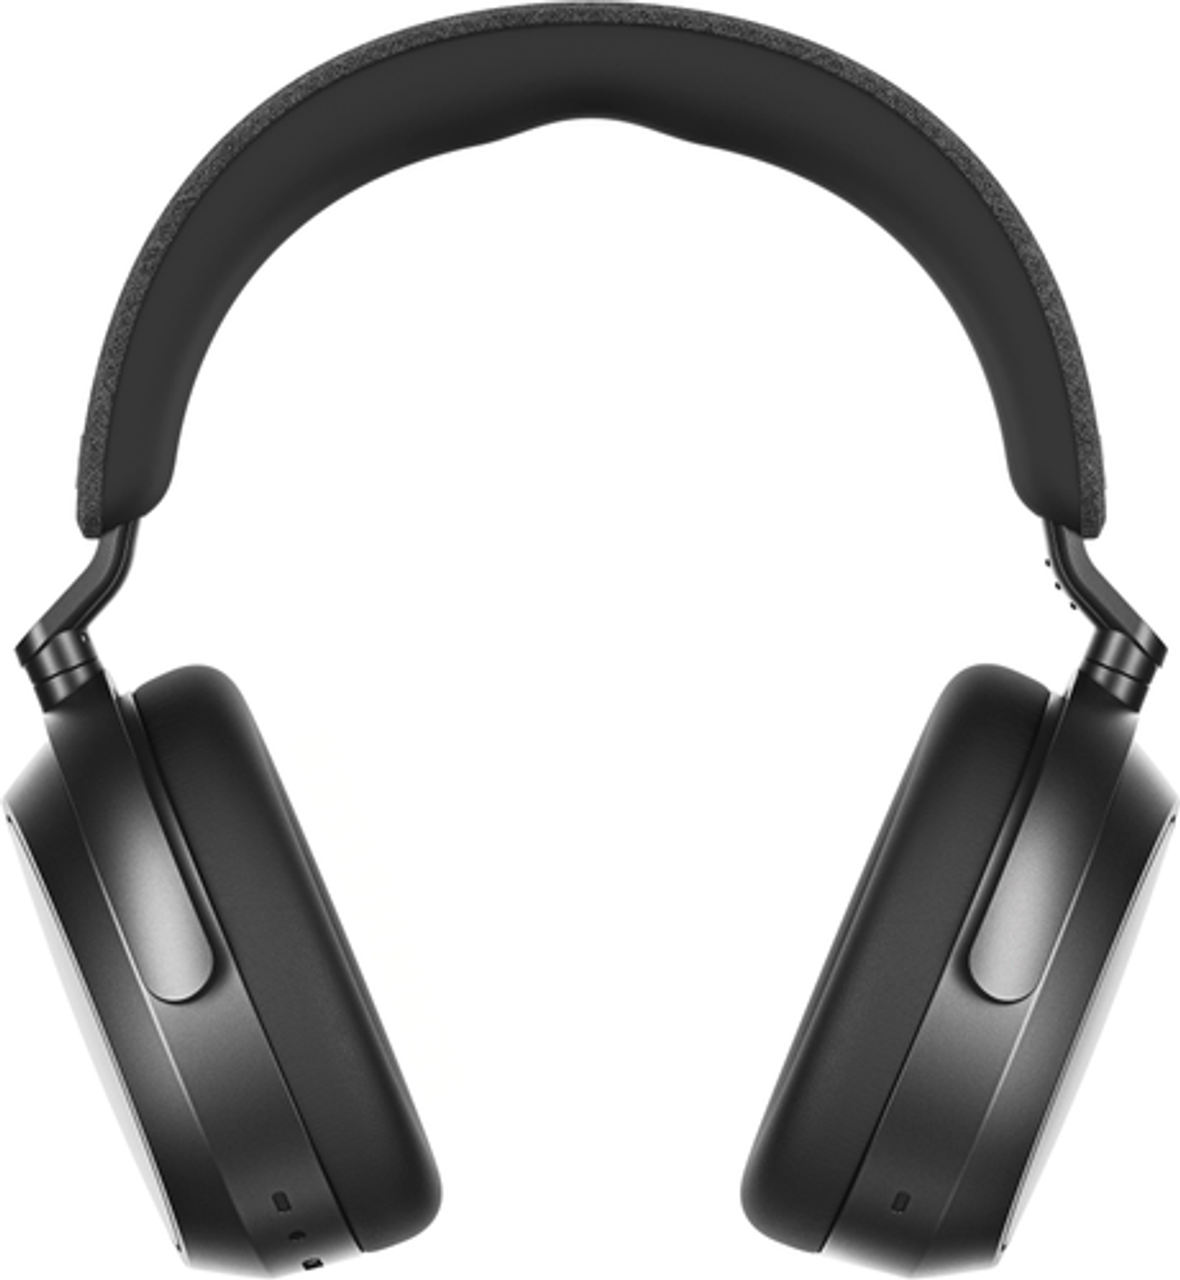 Sennheiser - Momentum 4 Wireless Adaptive Noise-Canceling Over-The-Ear Headphones - Graphite